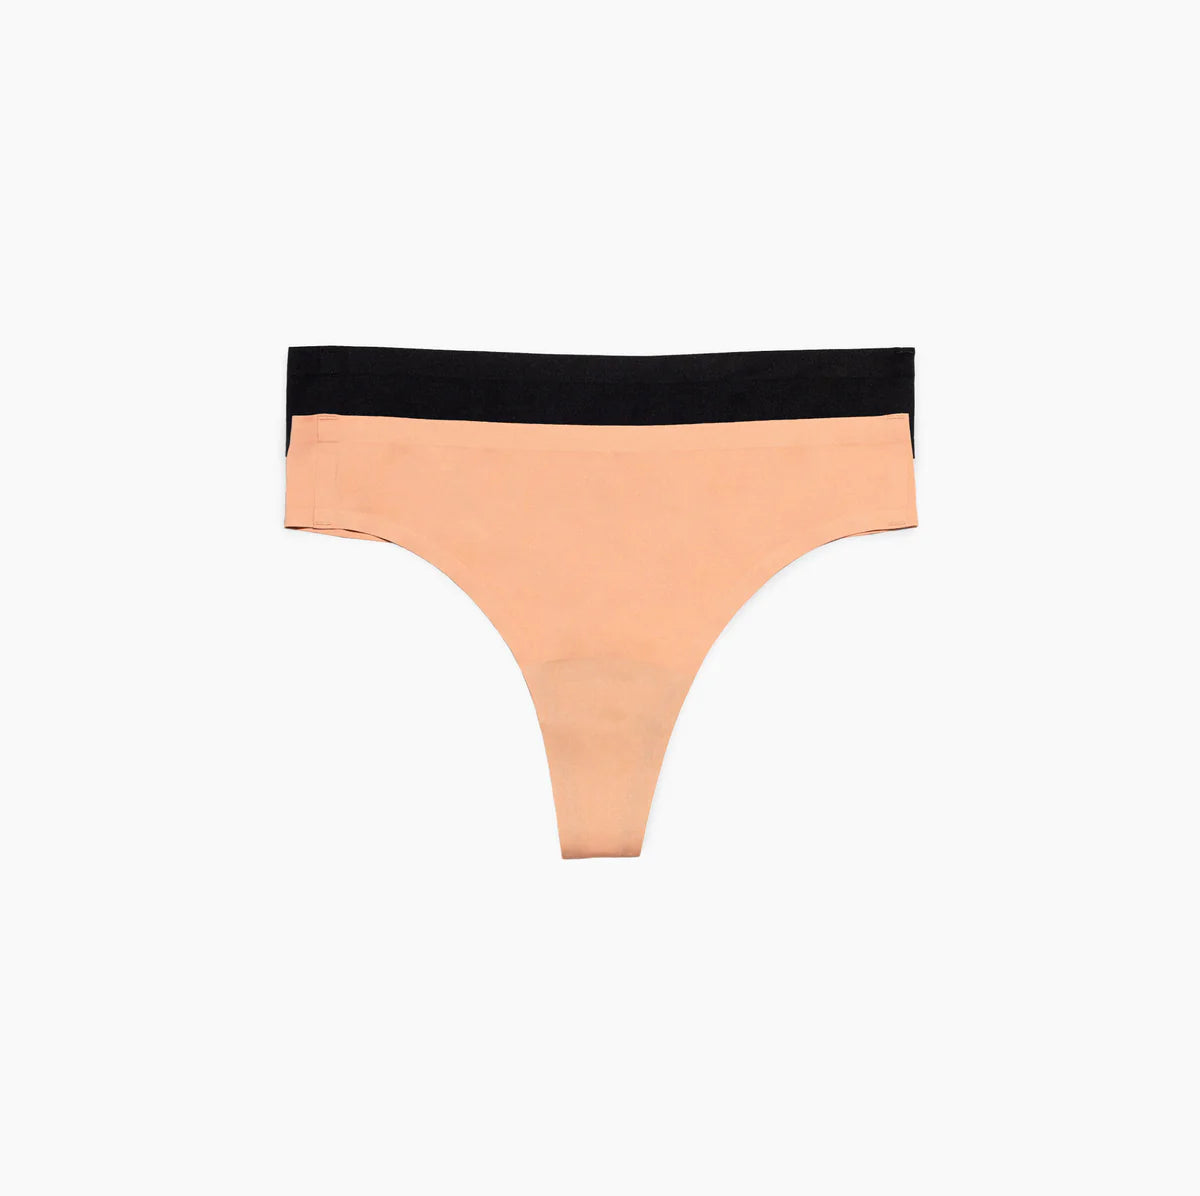 Seamless Bikini Period Underwear